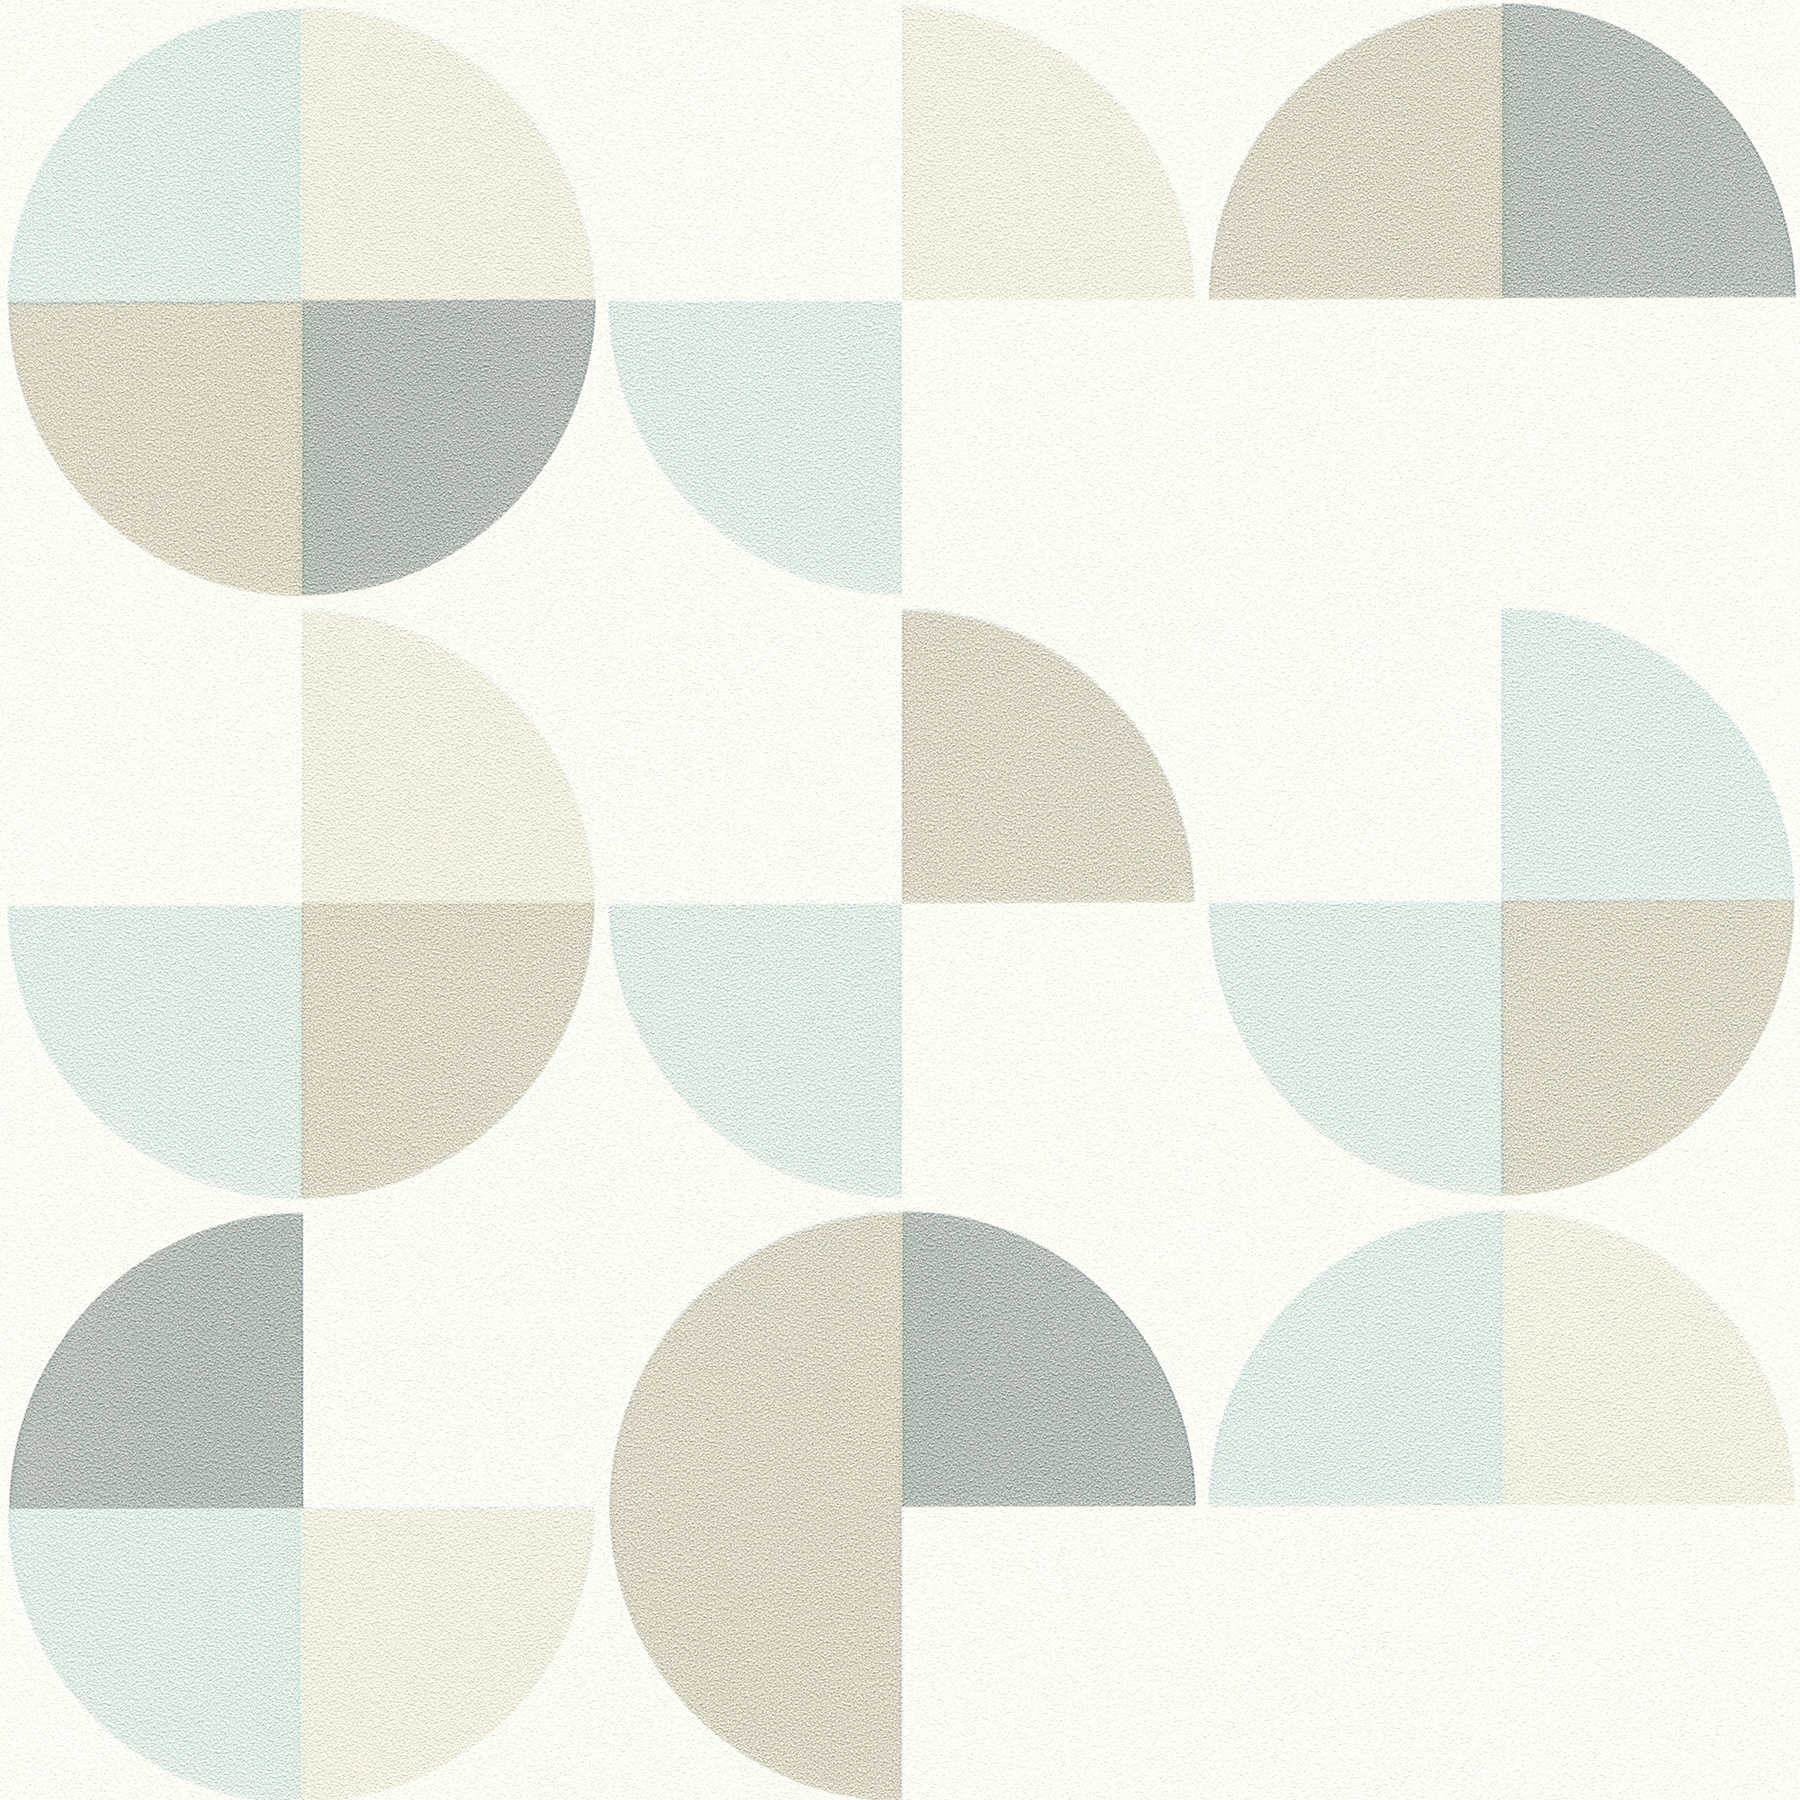 Papier peint à motifs géométriques style scandinave - bleu, gris, beige
